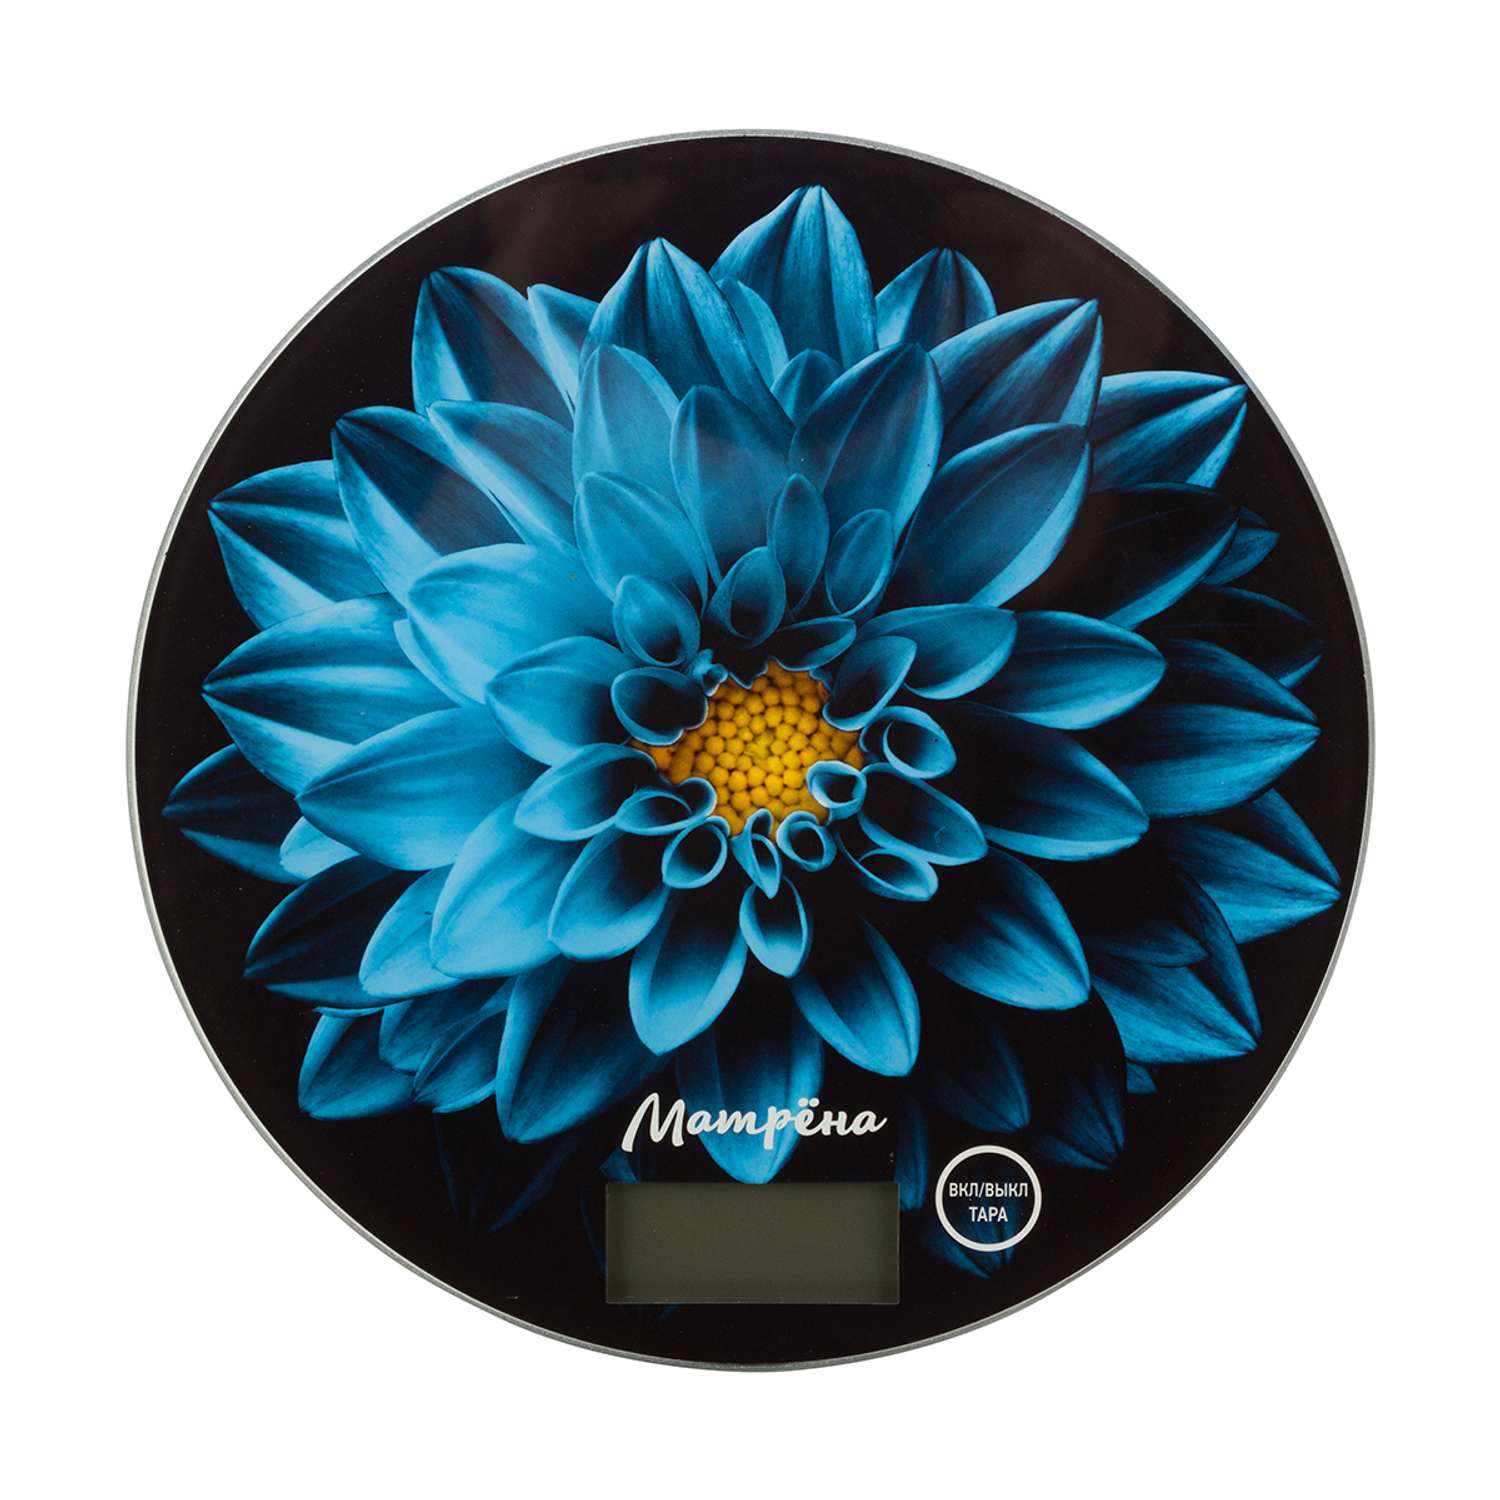 Весы кухонные электронные Матрена MA-197 до 7 кг голубой цветок - фото 1